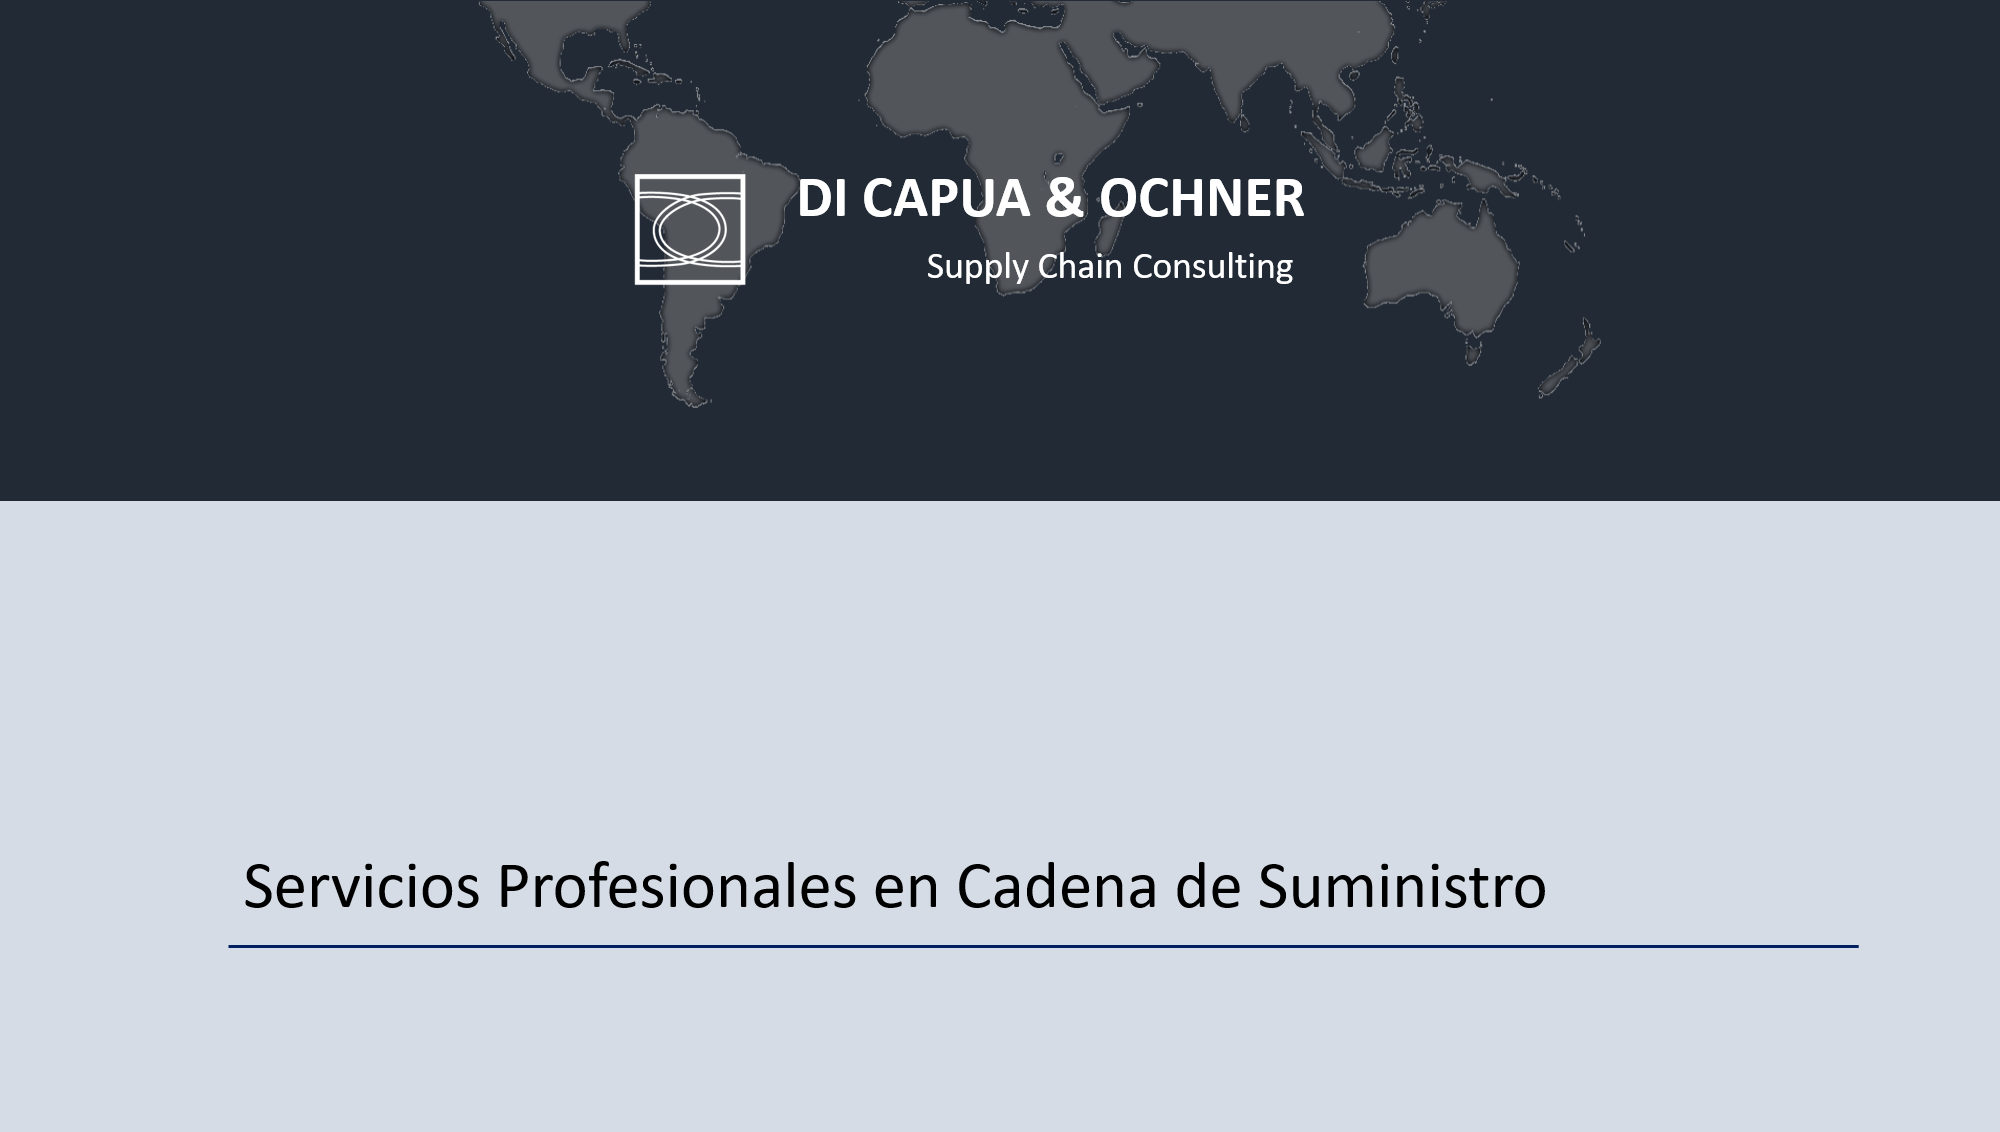 Di Capua & Ochner - Supply Chain Consulting